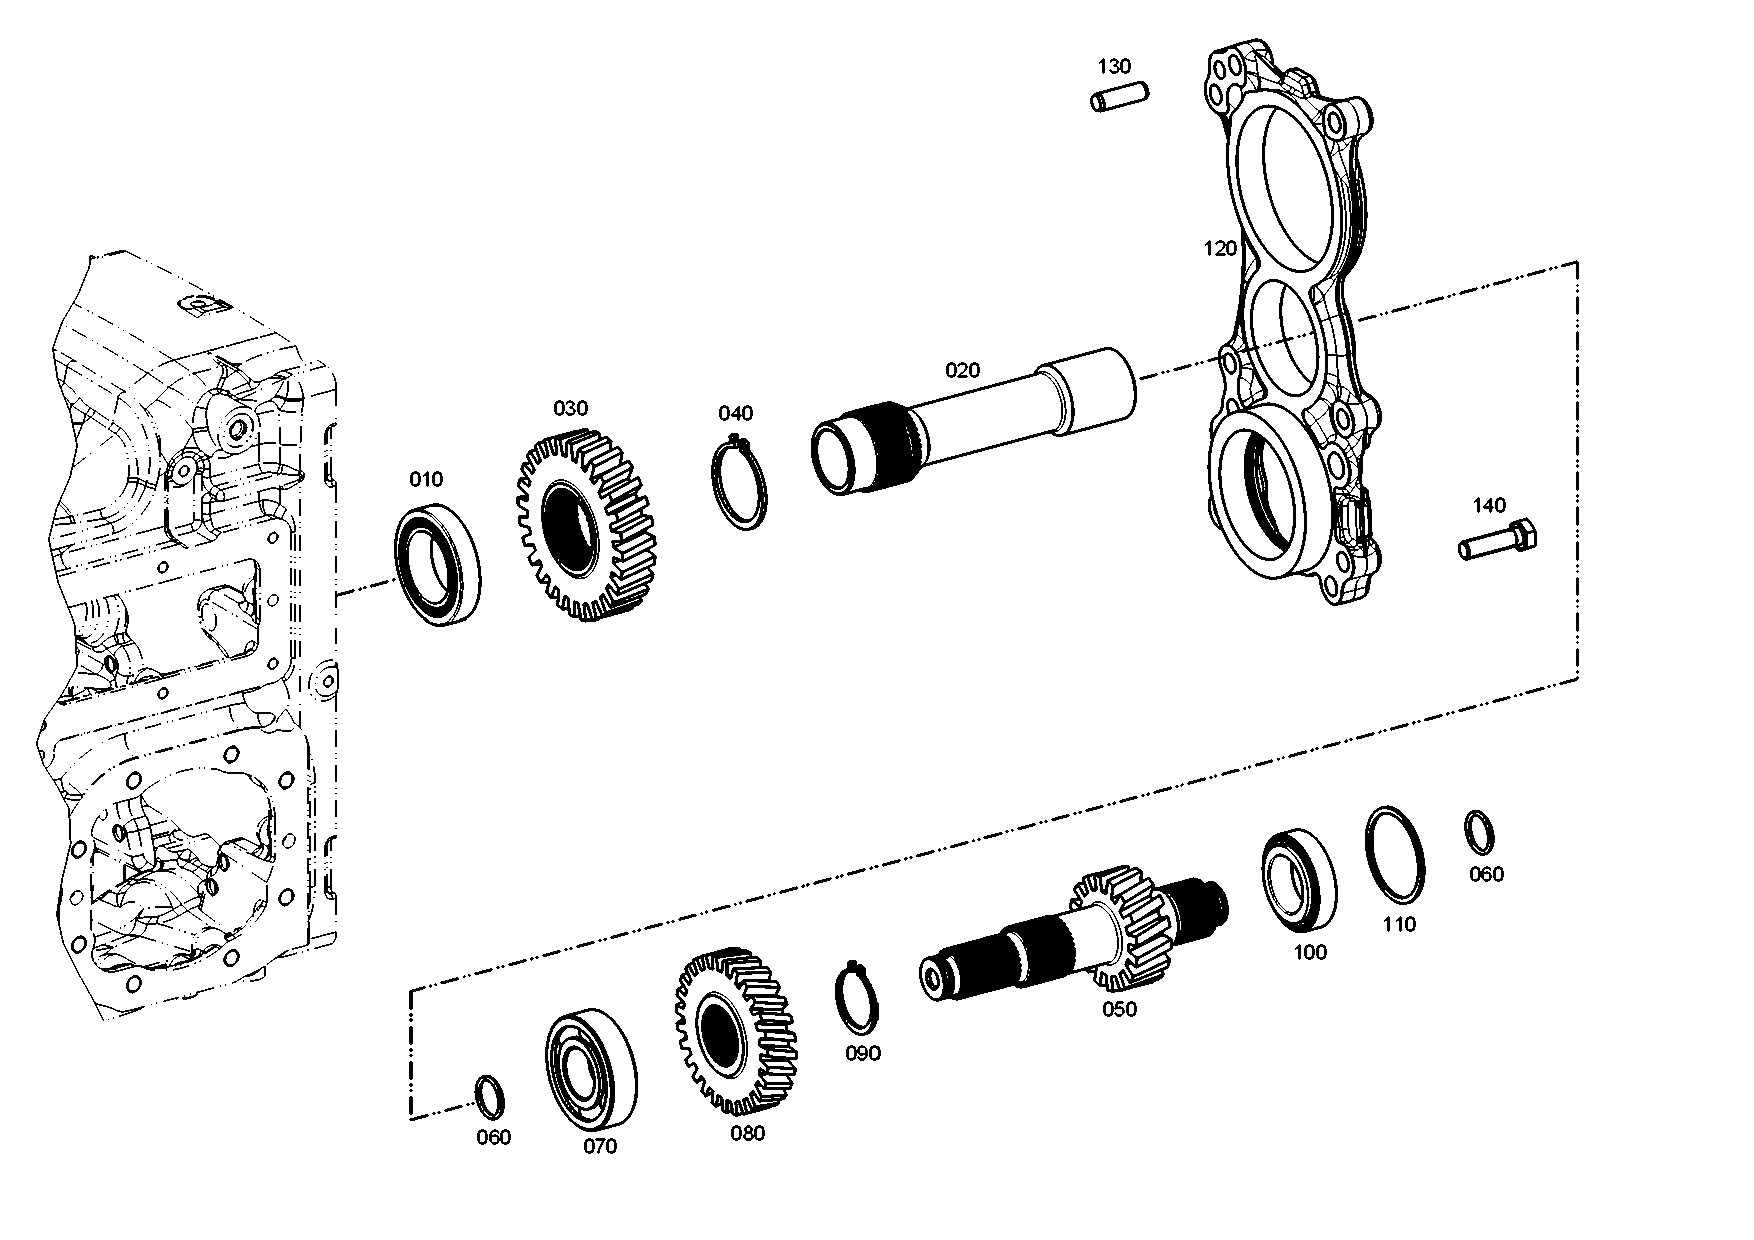 drawing for SCHOPF MASCHINENBAU GMBH 14018 - BALL BEARING (figure 1)